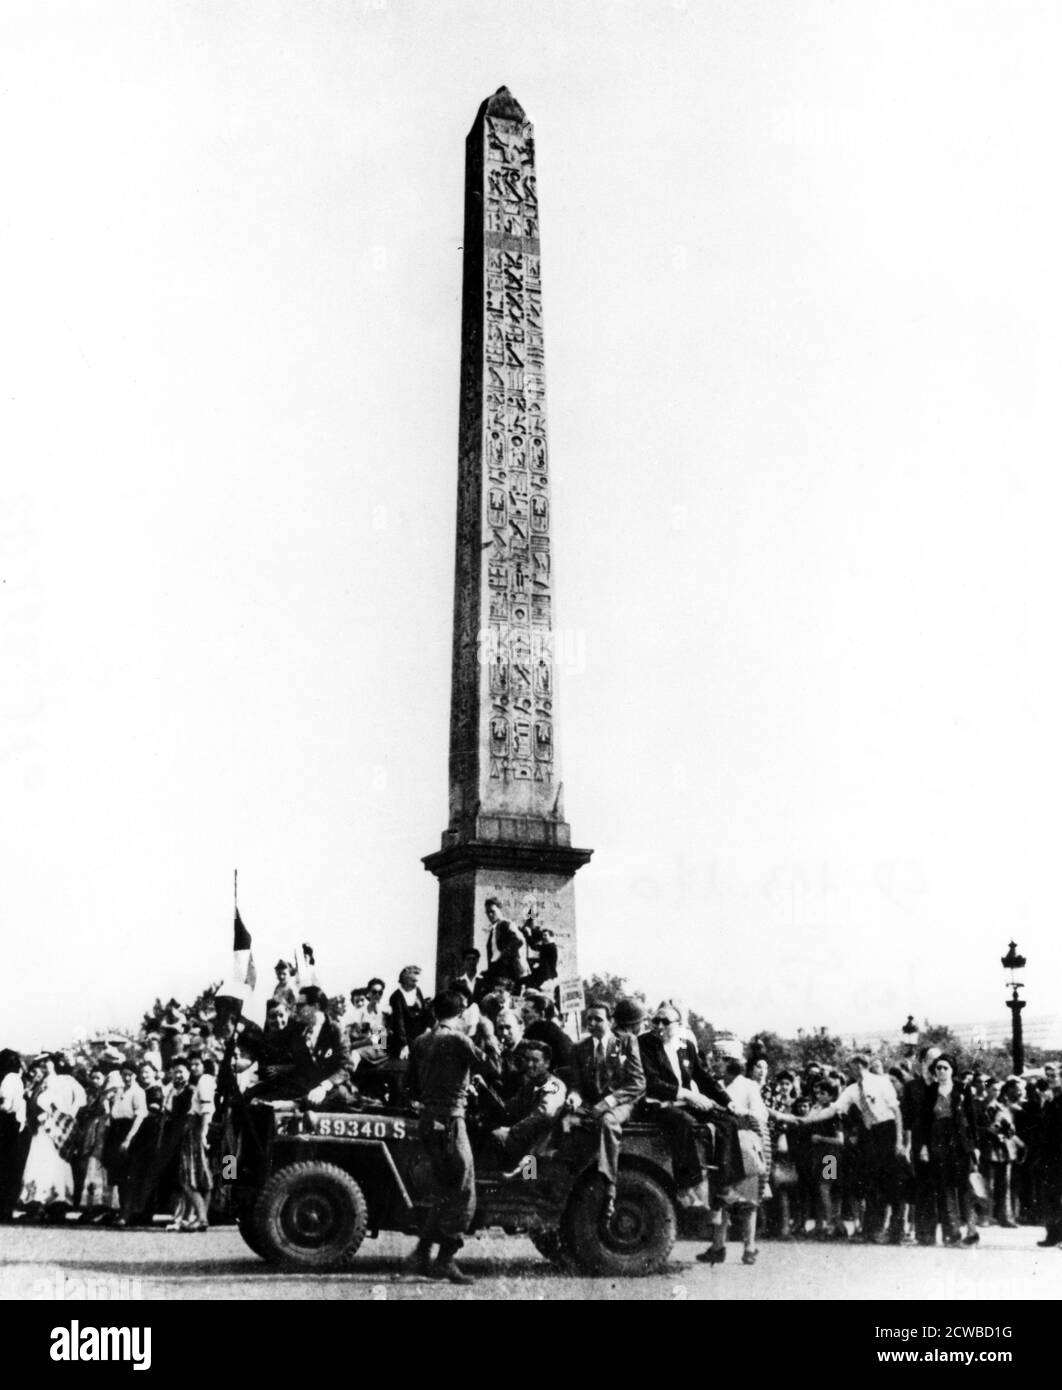 Die Befreiung von Paris, August 1944. Jubelende französische Zivilisten umgeben den Obelisk am Place de la Concorde und andere fahren auf einem amerikanischen Jeep. Die deutschen Truppen in Paris kapitulierten am 25. August 1944 den Alliierten. Der Fotograf ist unbekannt. Stockfoto